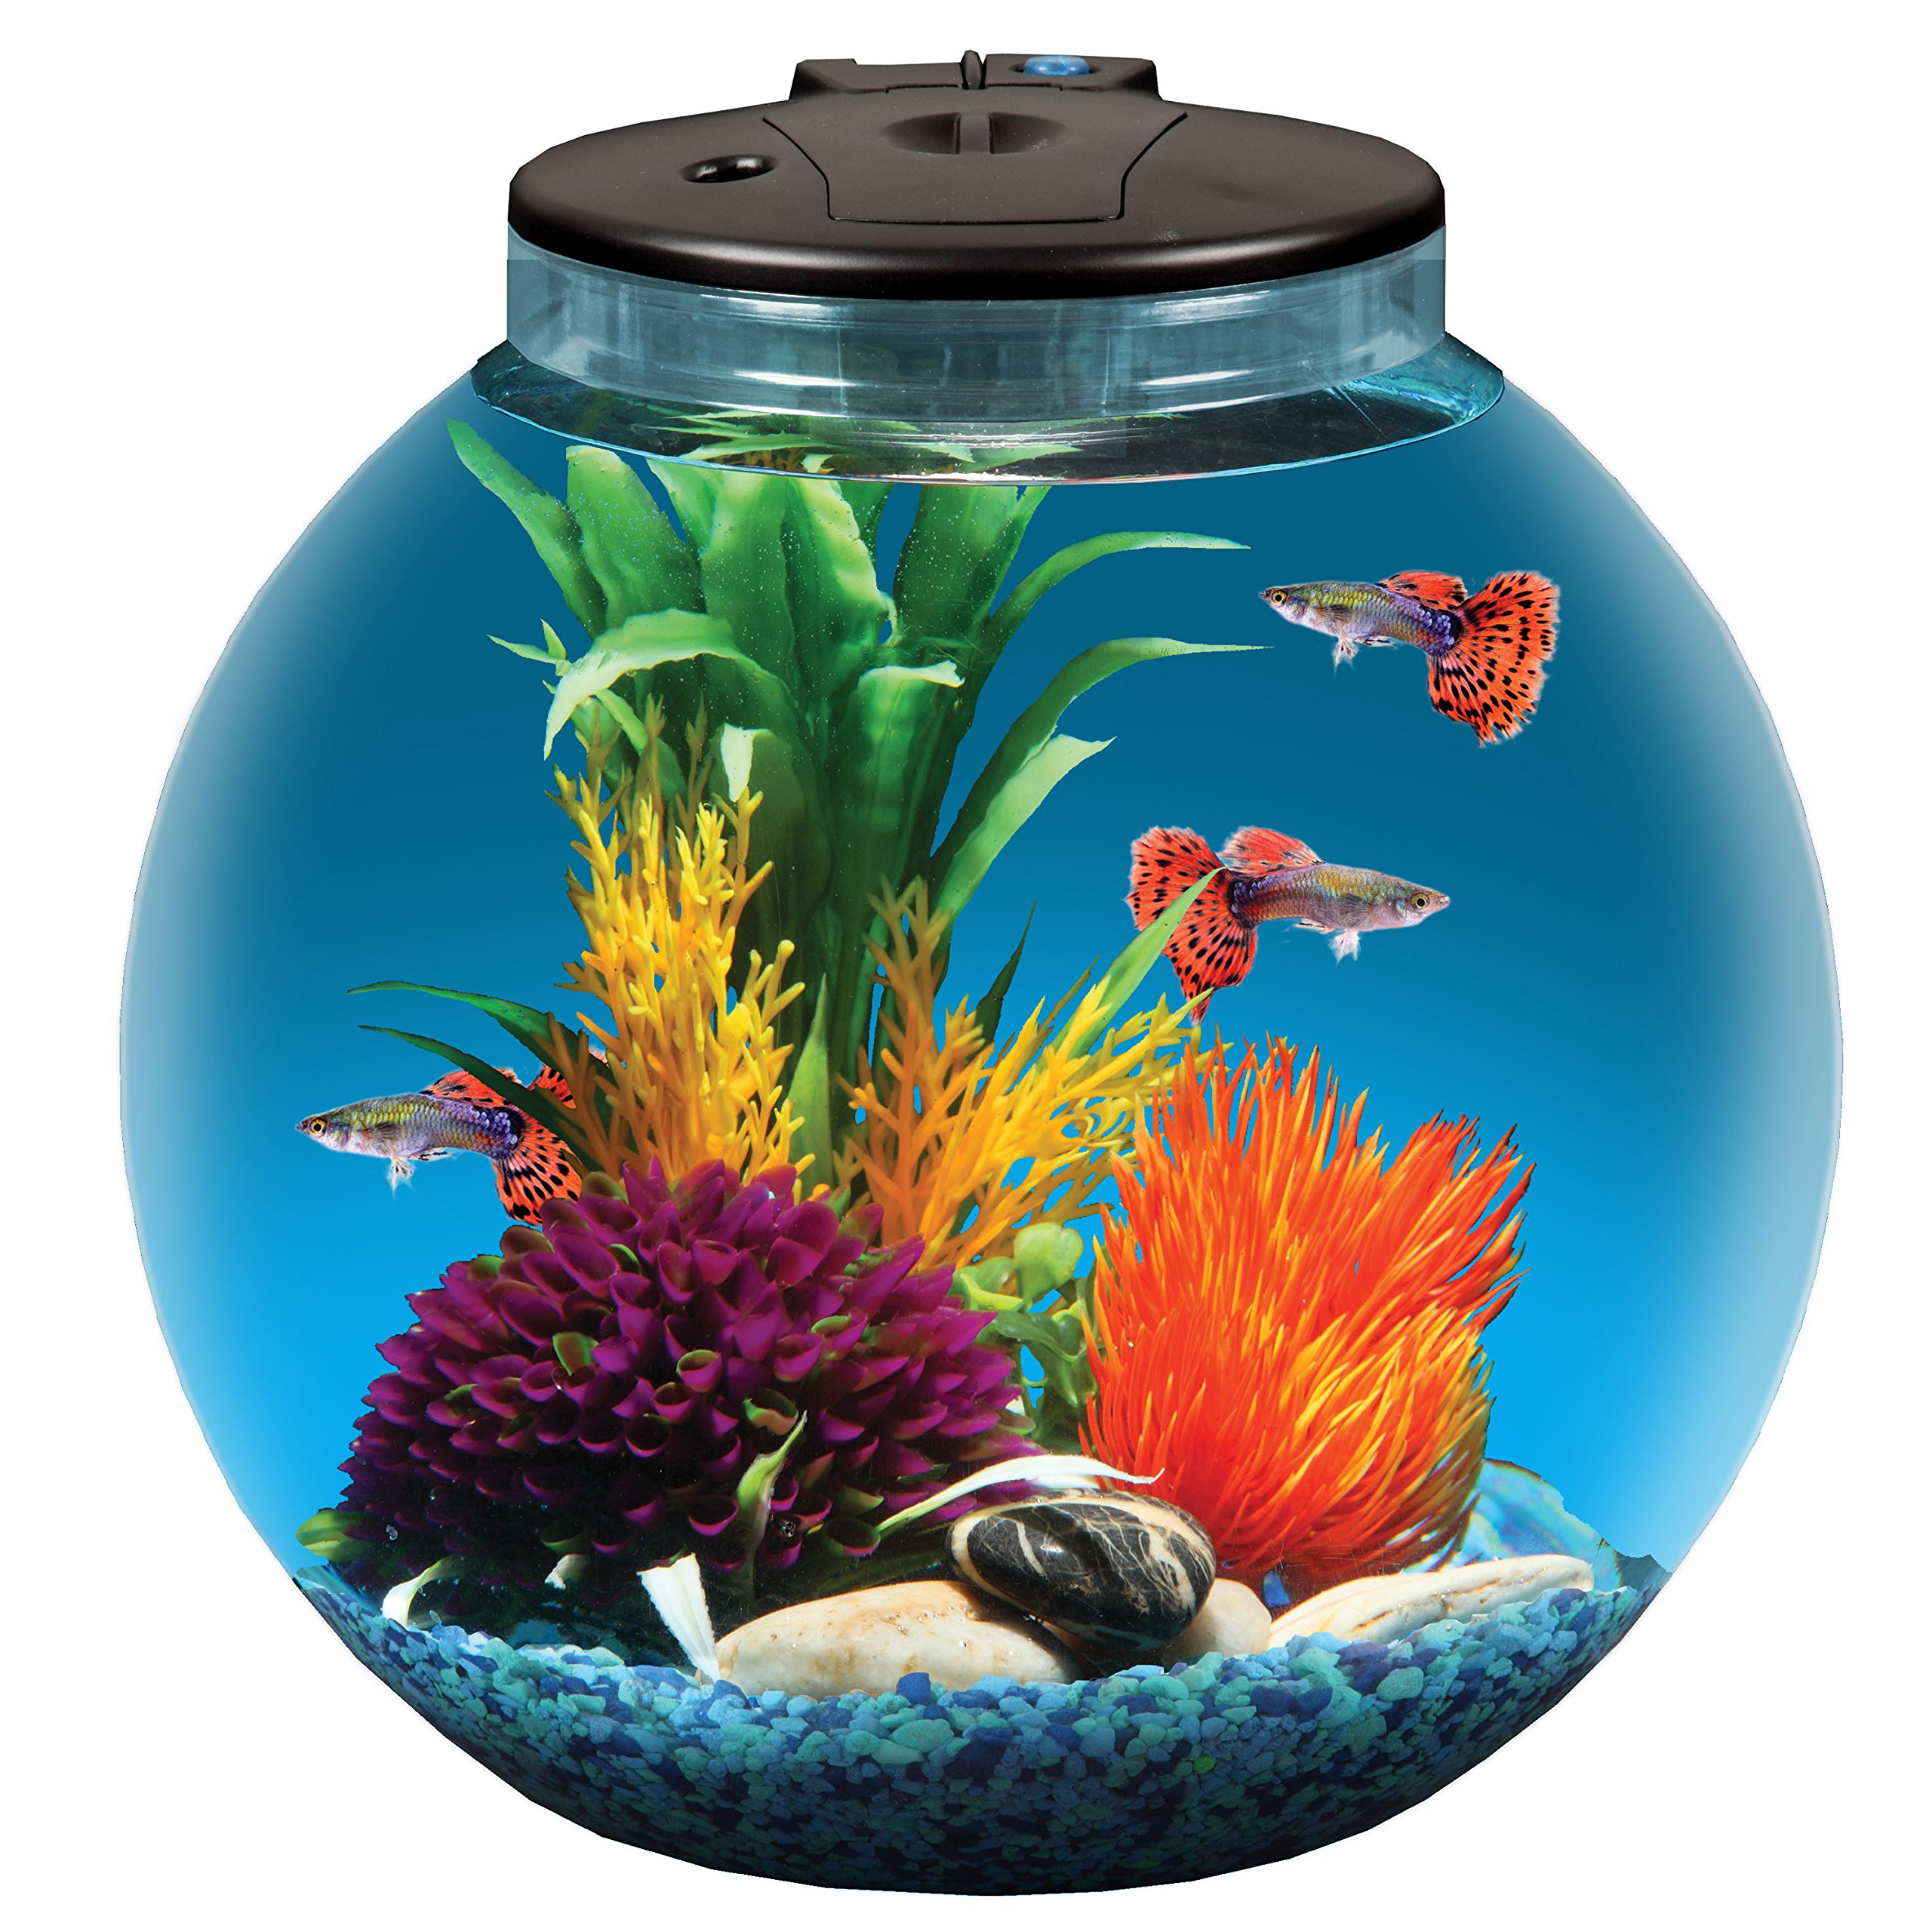 Koller Products 3-Gallon Fish Bowl